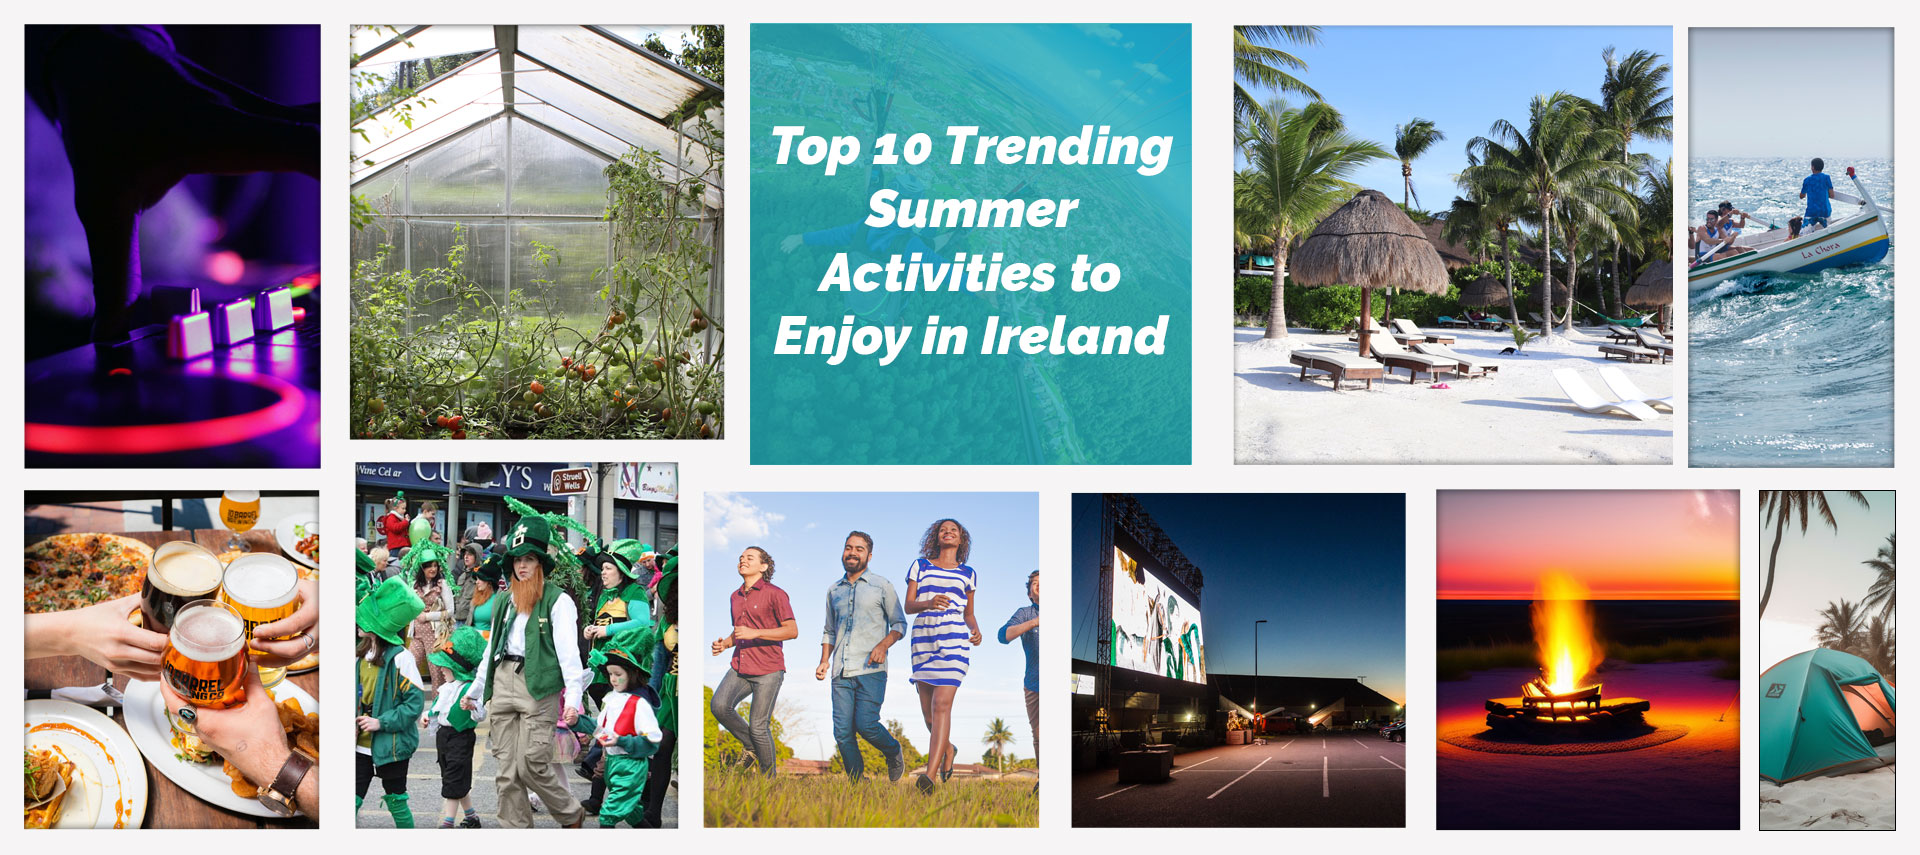 Top 10 Trending Summer Activities to Enjoy in Ireland